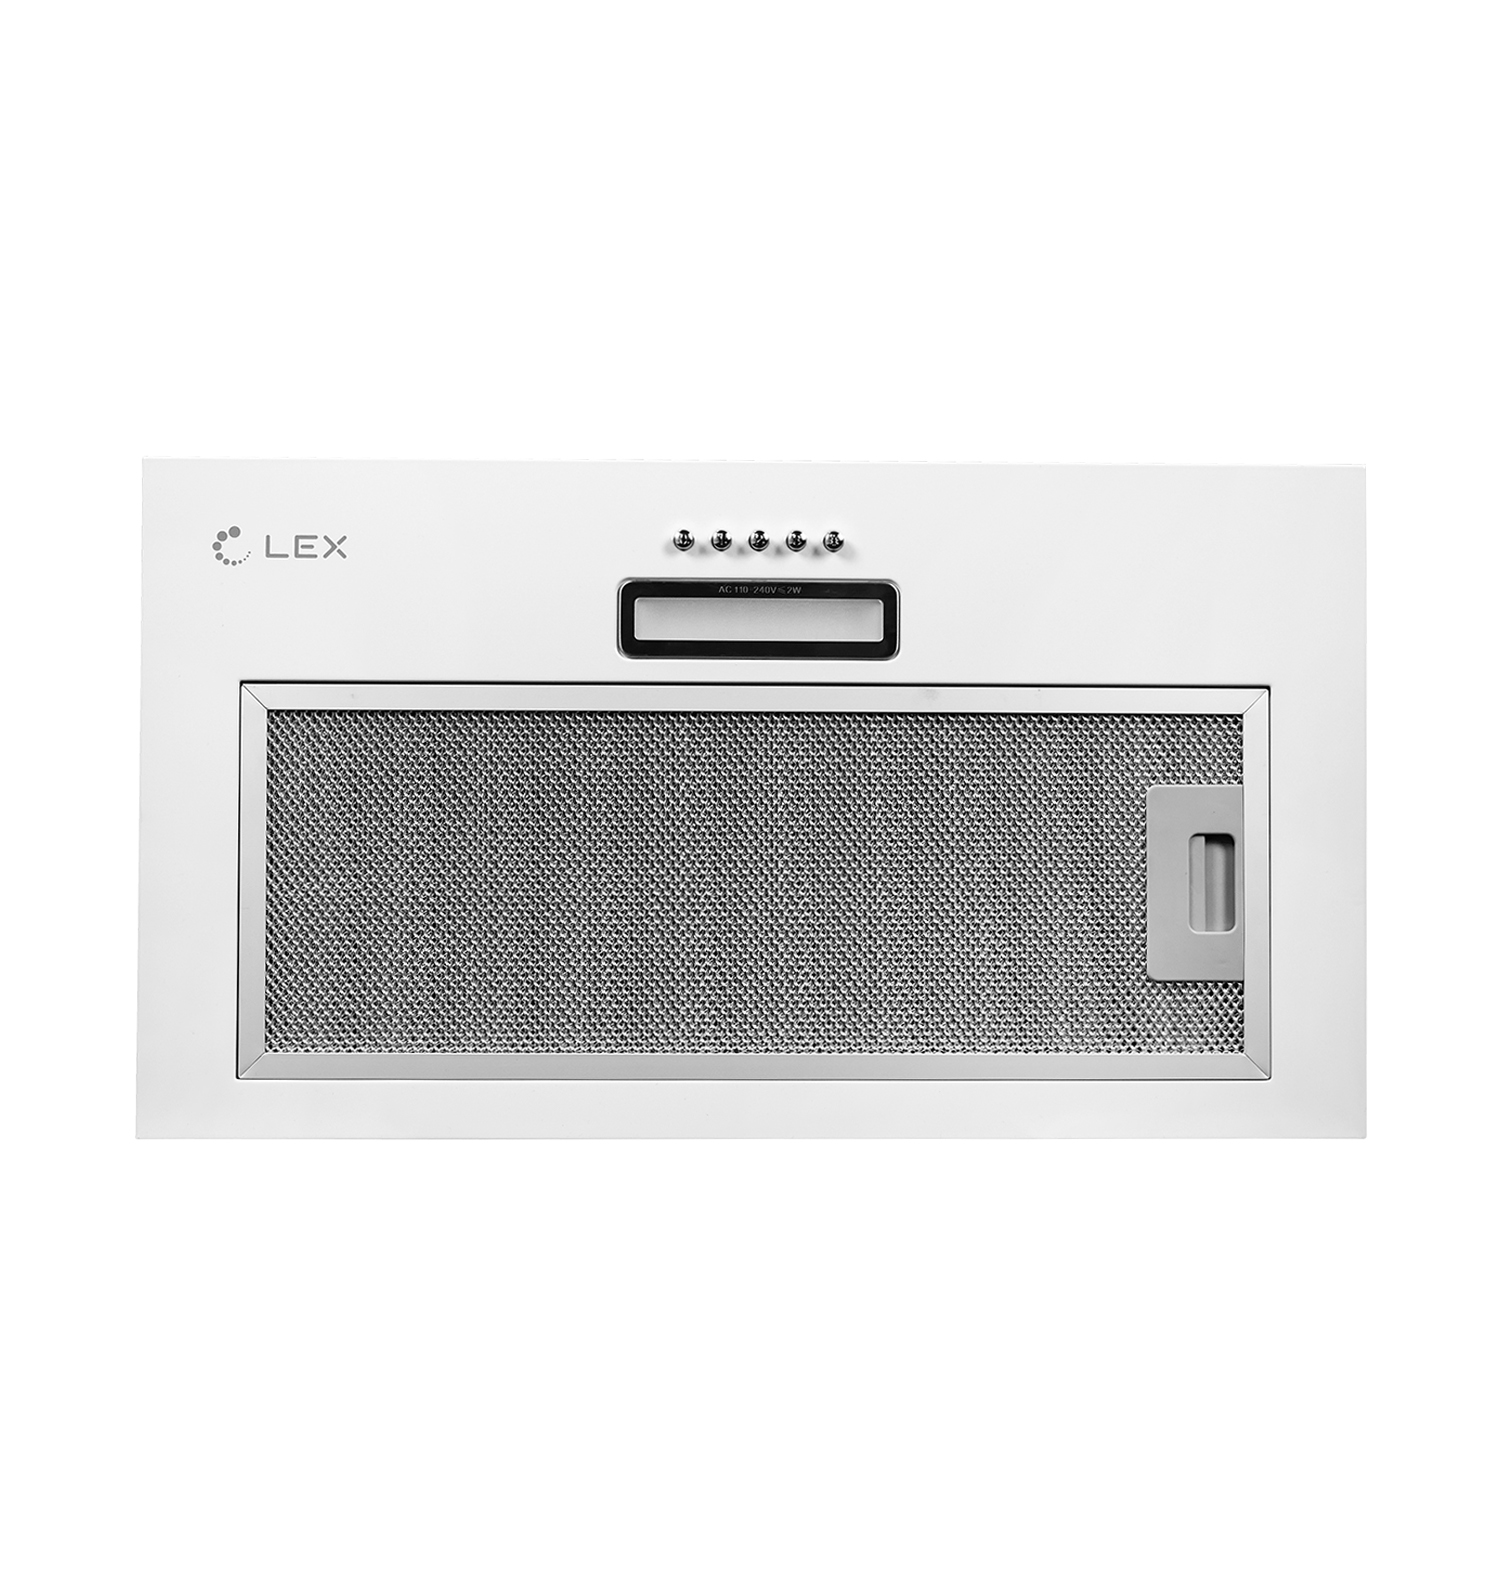 Кухонная вытяжка встраиваемая Lex GS Bloc Light 60 см белая (CHTI000329)